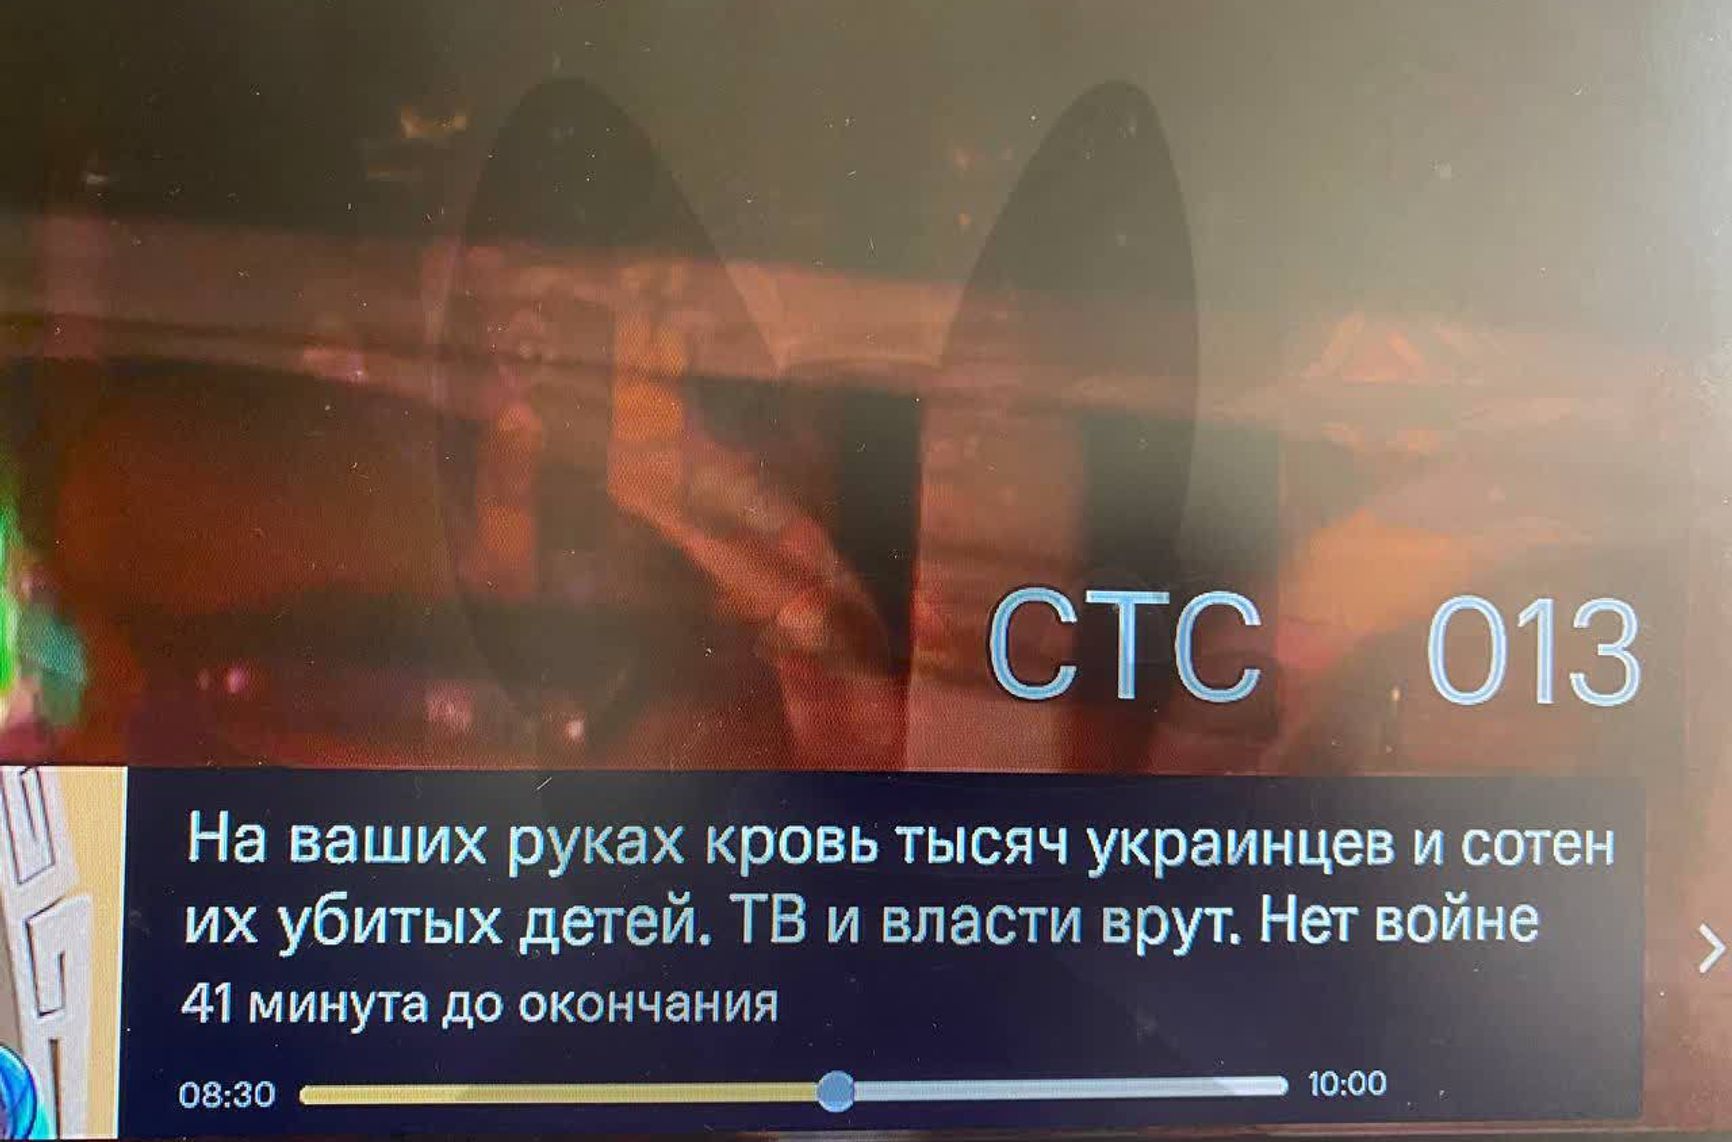 «На ваших руках кровь украинцев». Хакеры взломали российские телеканалы в Smart TV